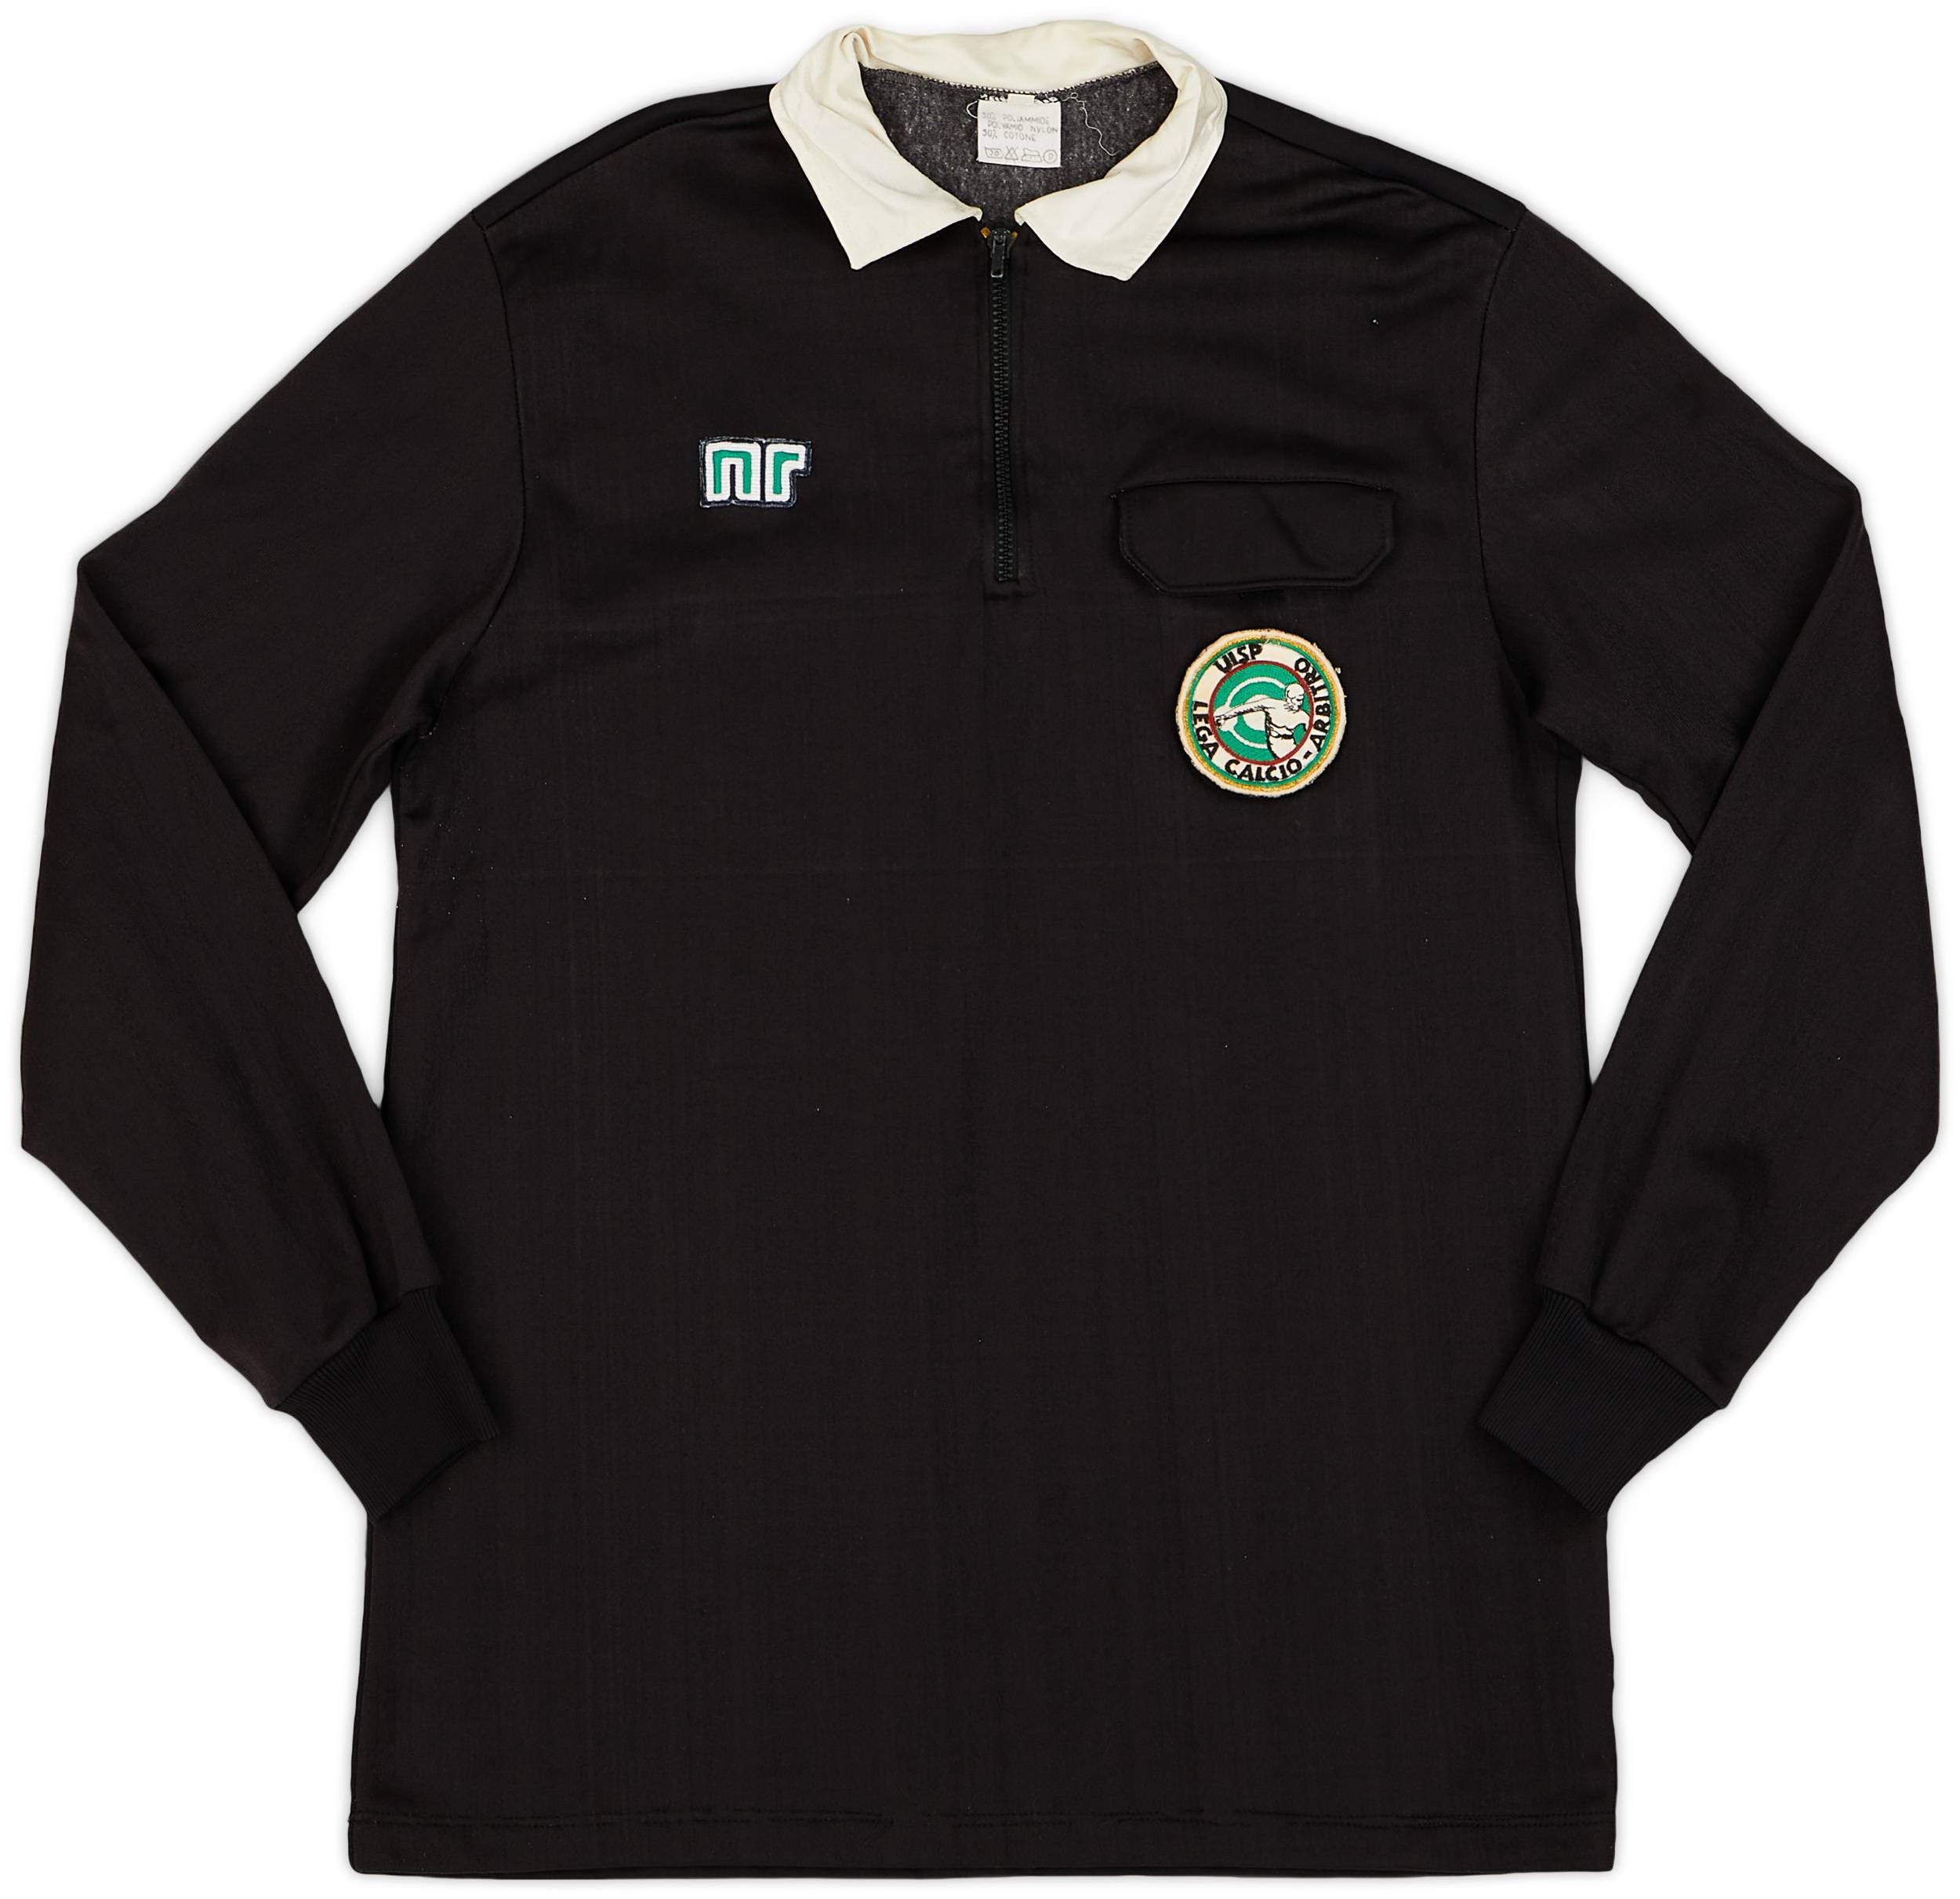 1980s Italian Ennerre Referee L/S Shirt - 9/10 - (XL)